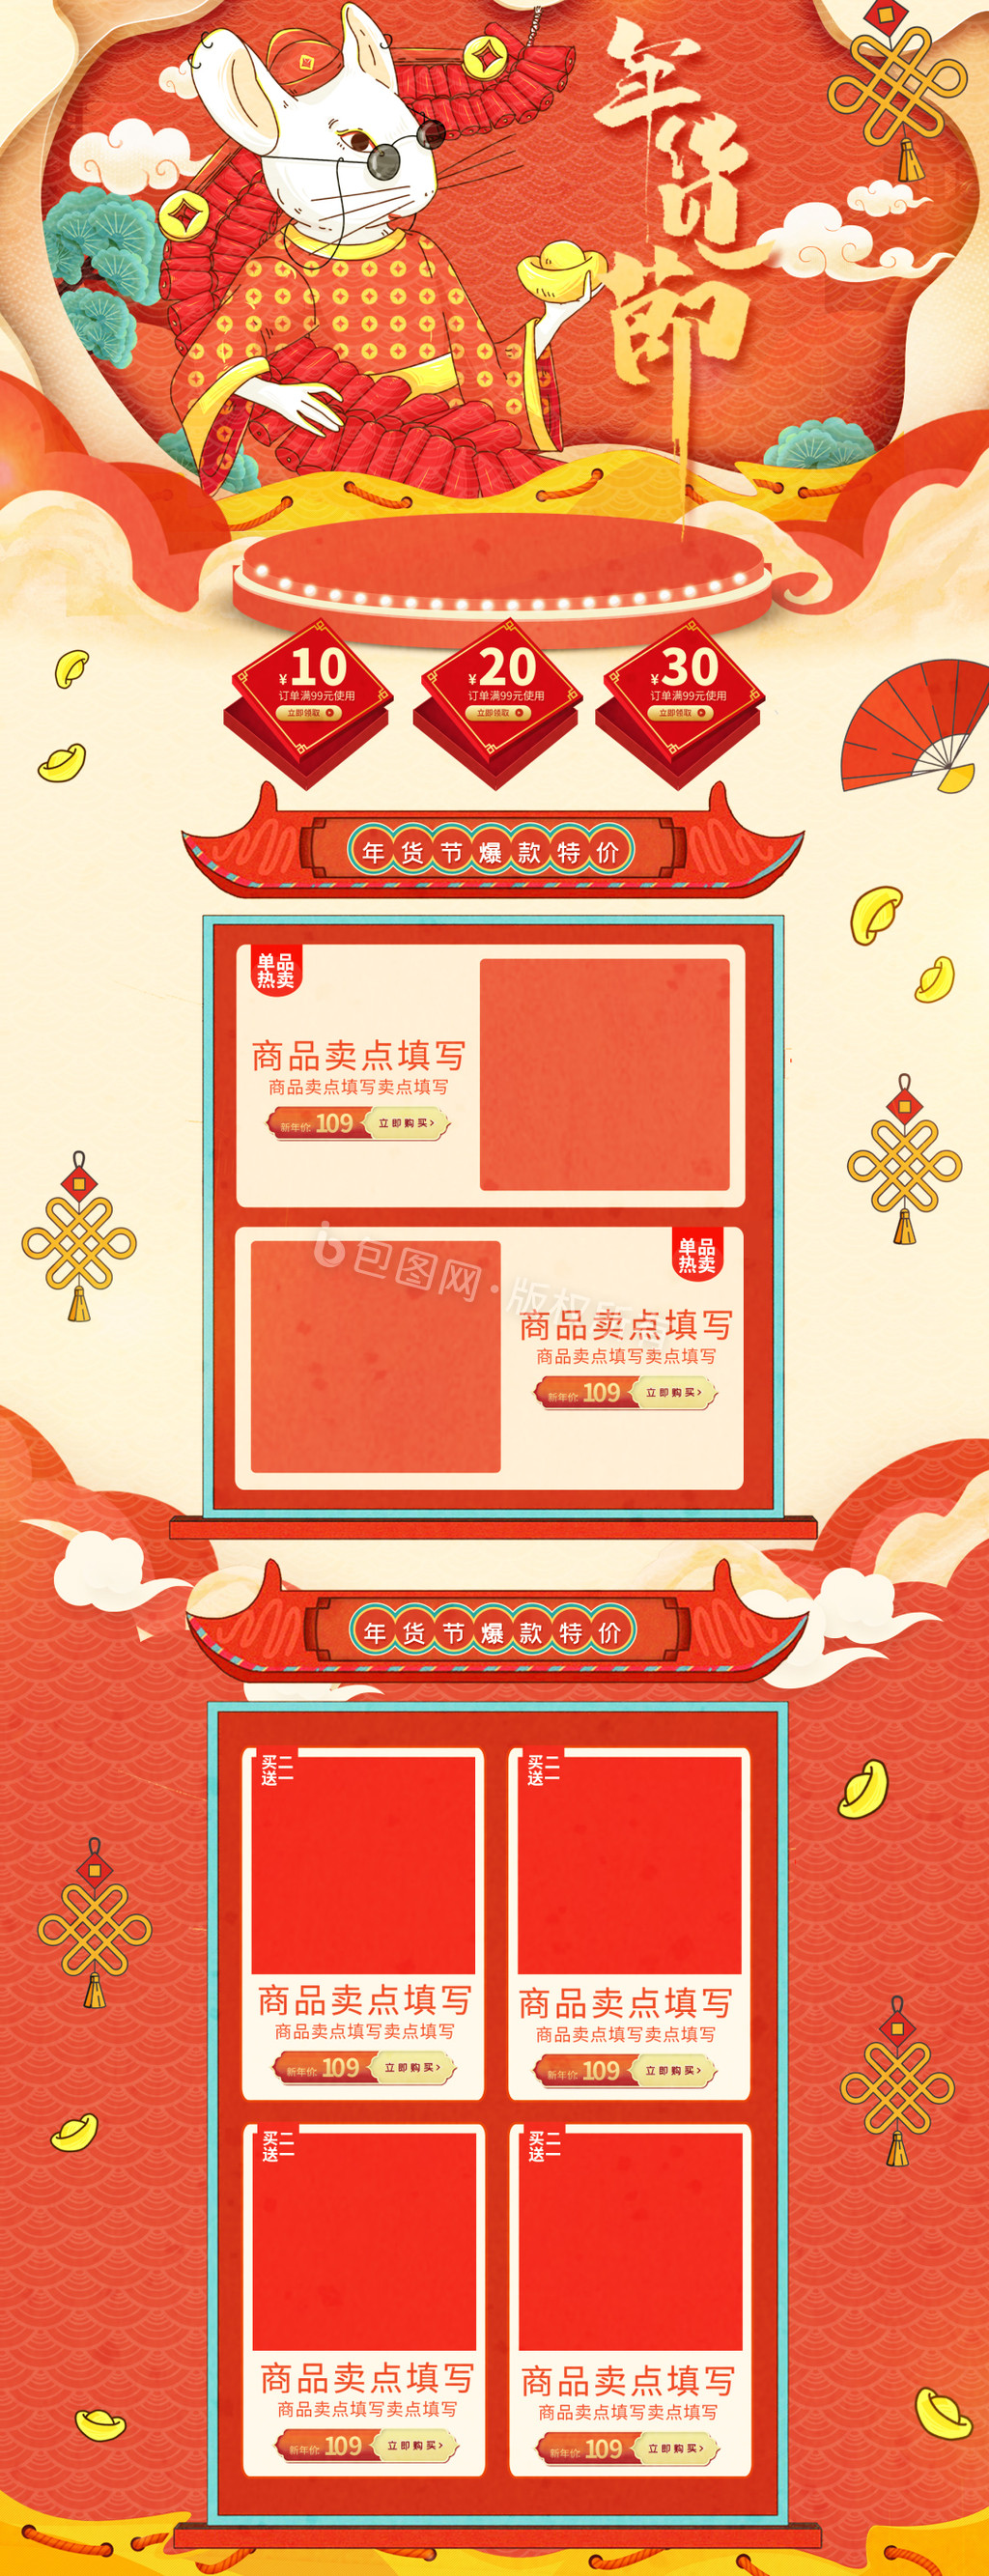 橘红喜庆新春鼠年年货节动态海报GIF图片